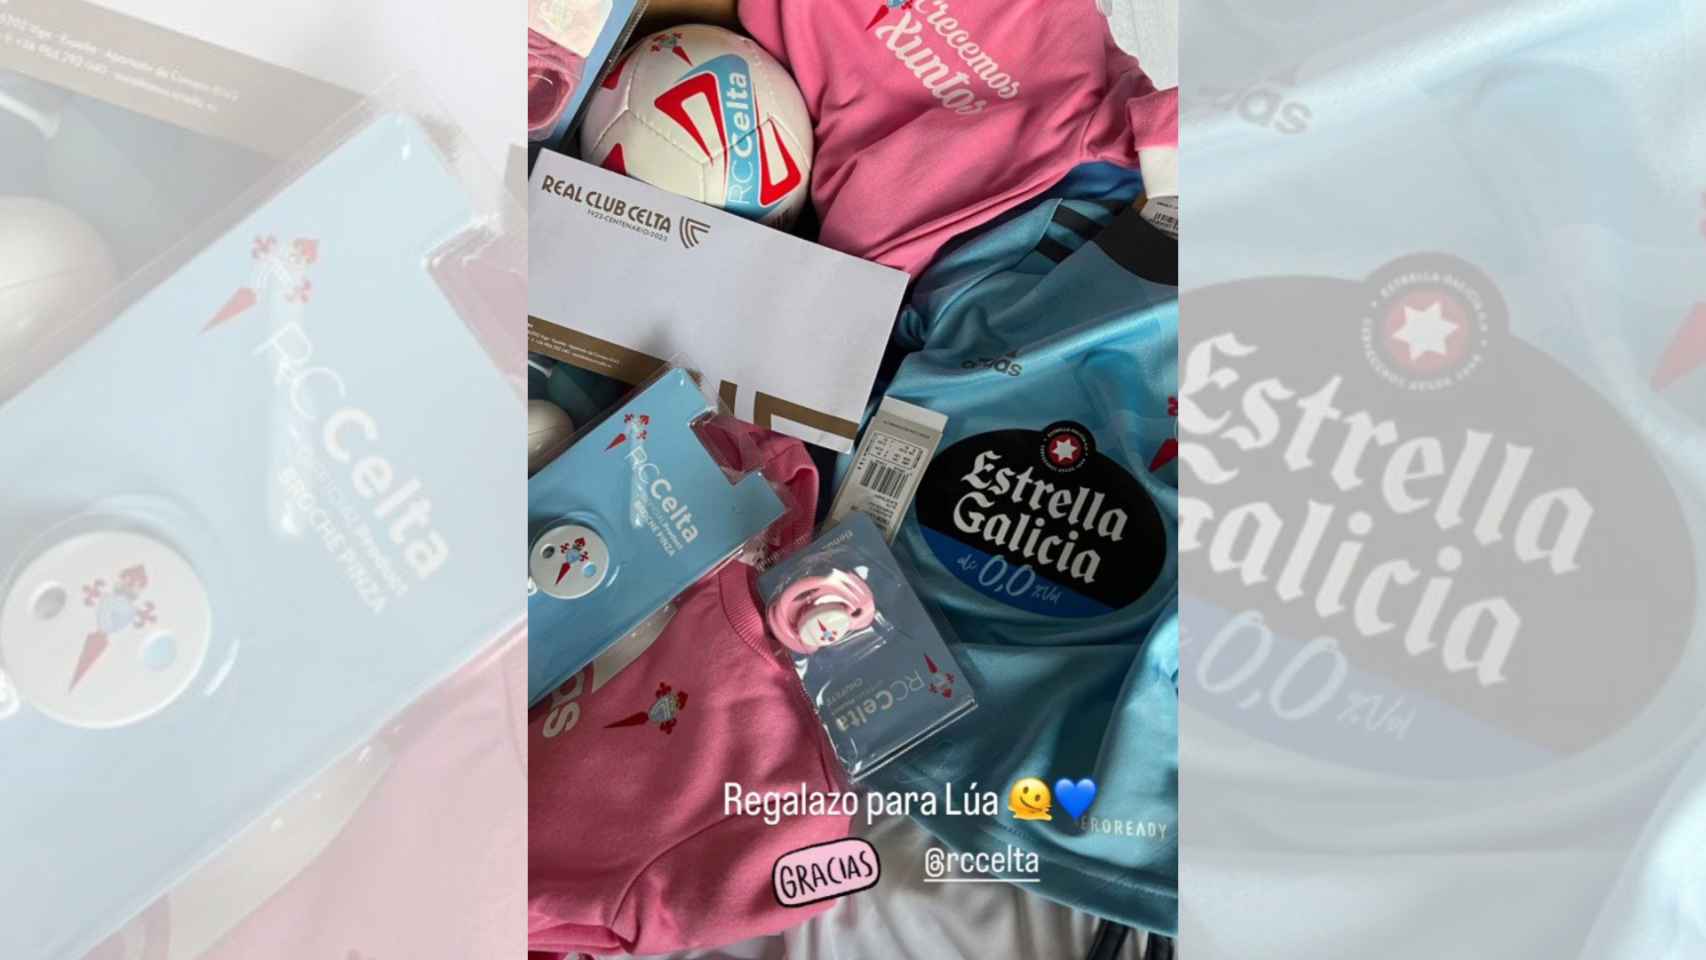 Imagen de los regalos del Celta a la hija de Ana Peleteiro compartido por ella en Instagram.